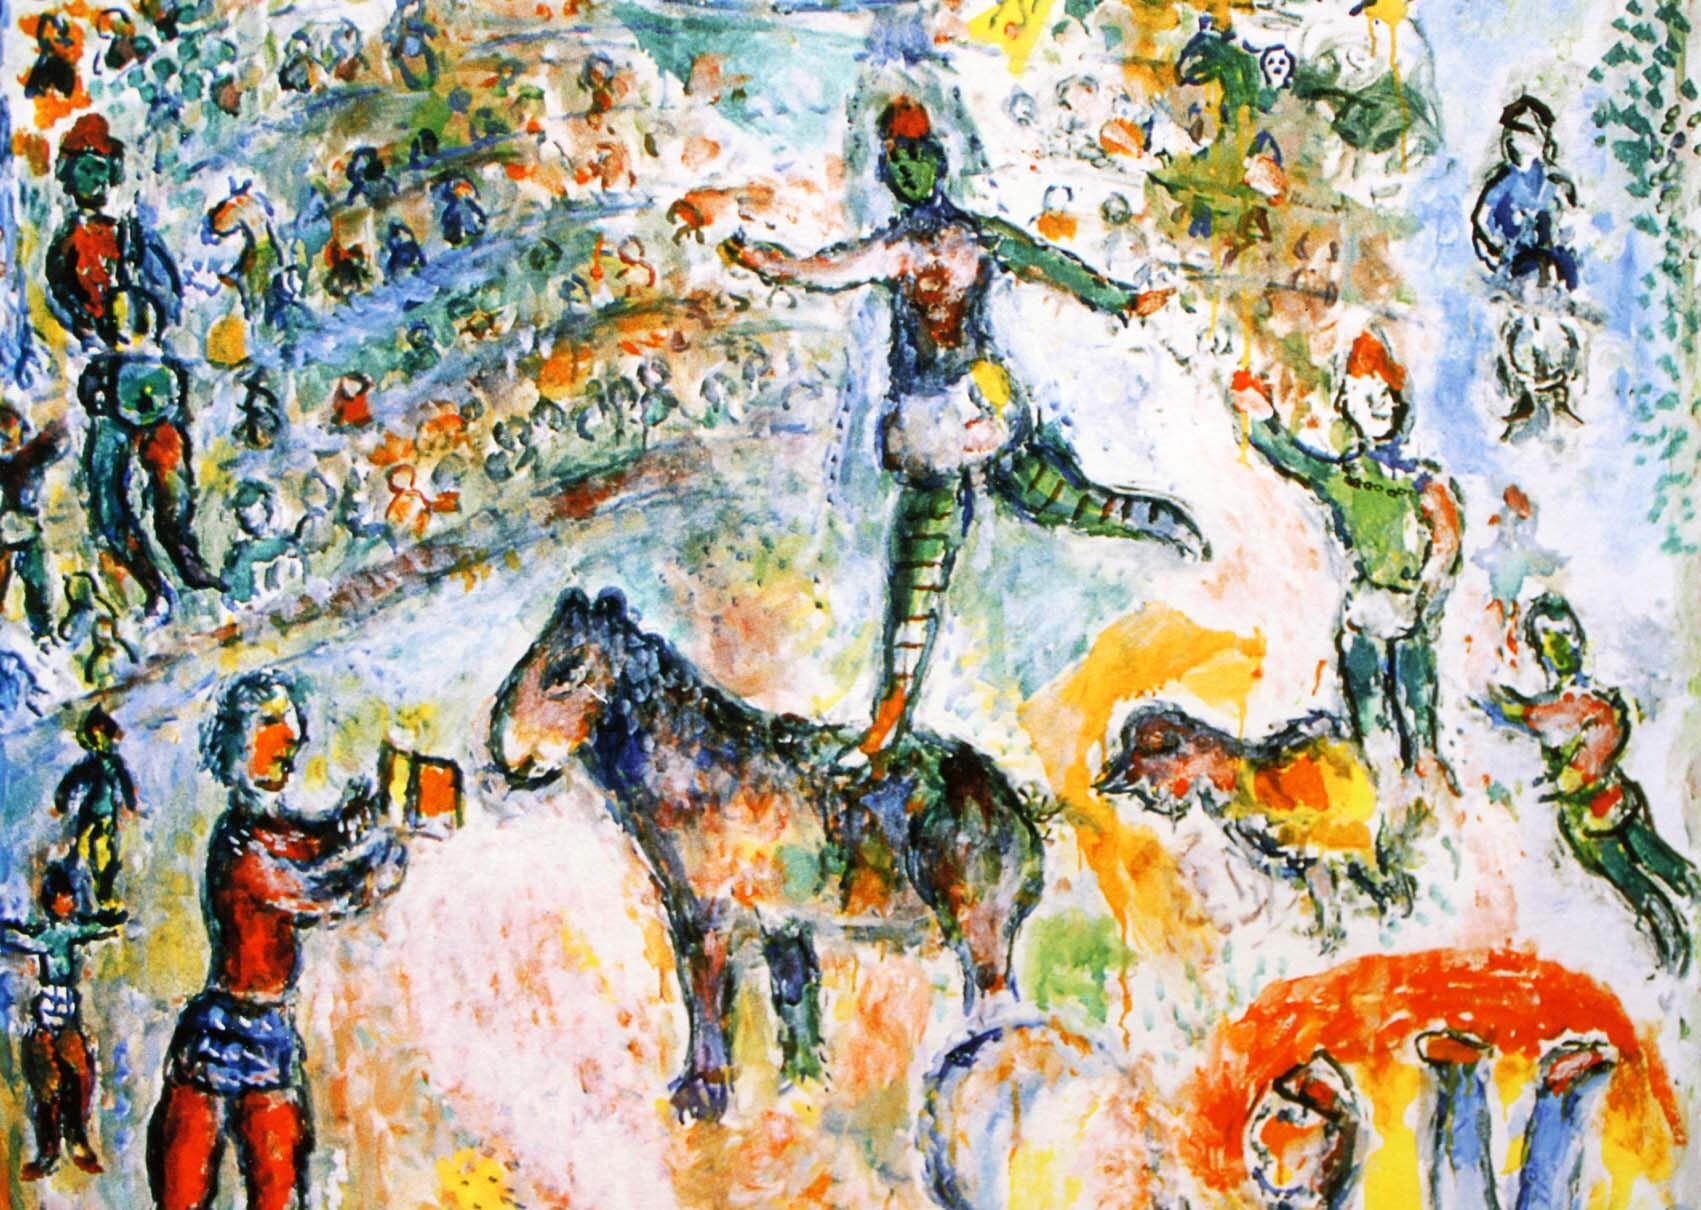 マルク・シャガール絵画「サーカス・グランド」作品証明書・展示用フック・限定375部エディション付複製画ジークレ